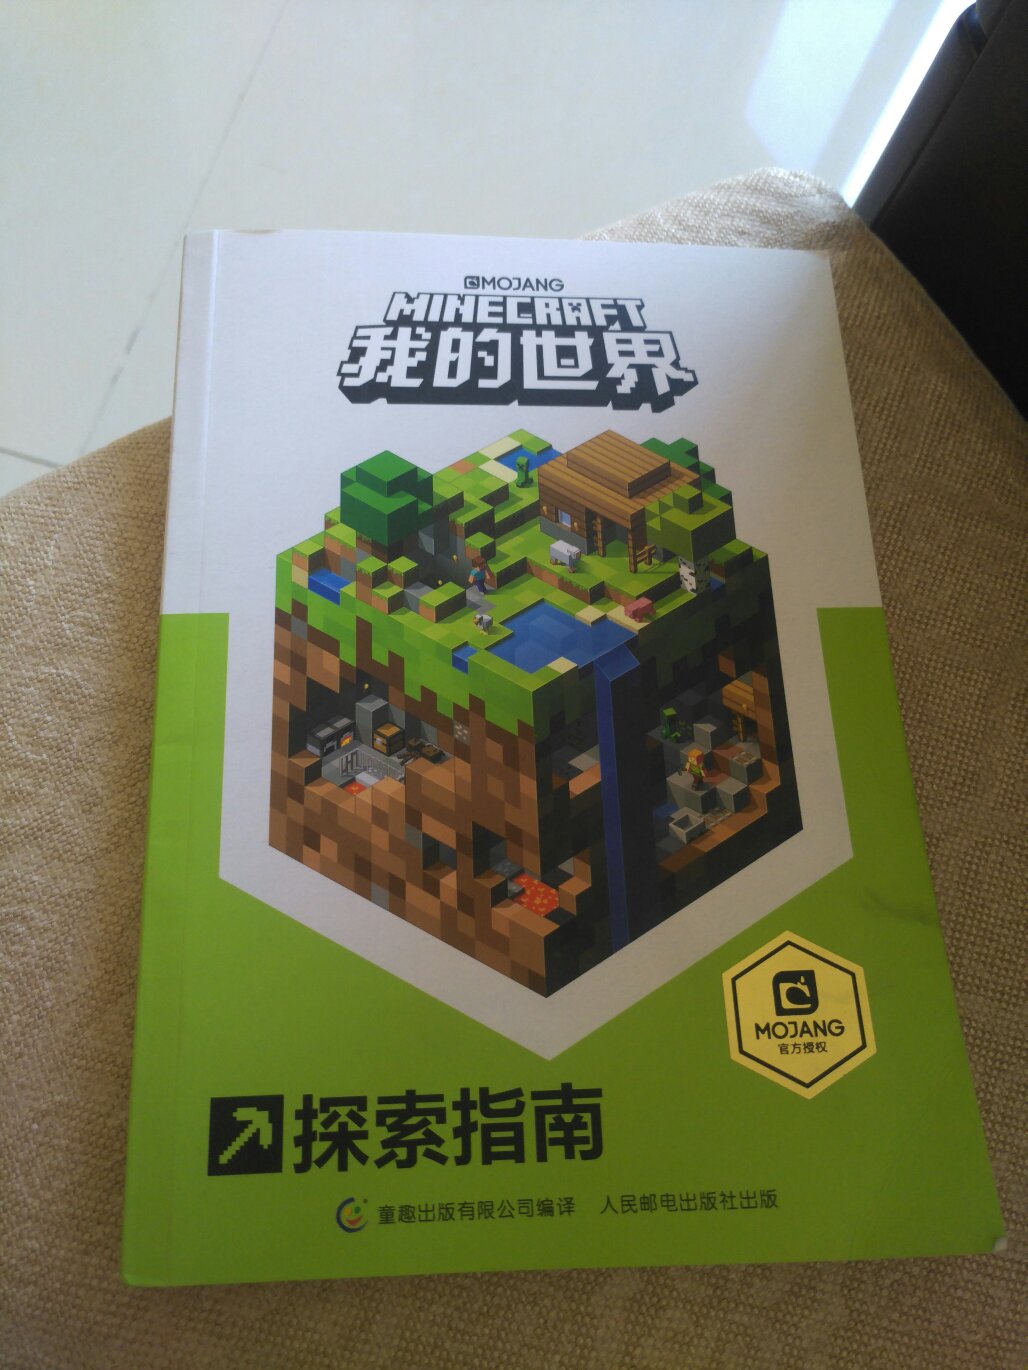 小朋友正在研究这个游戏，买点书学习一下吧。